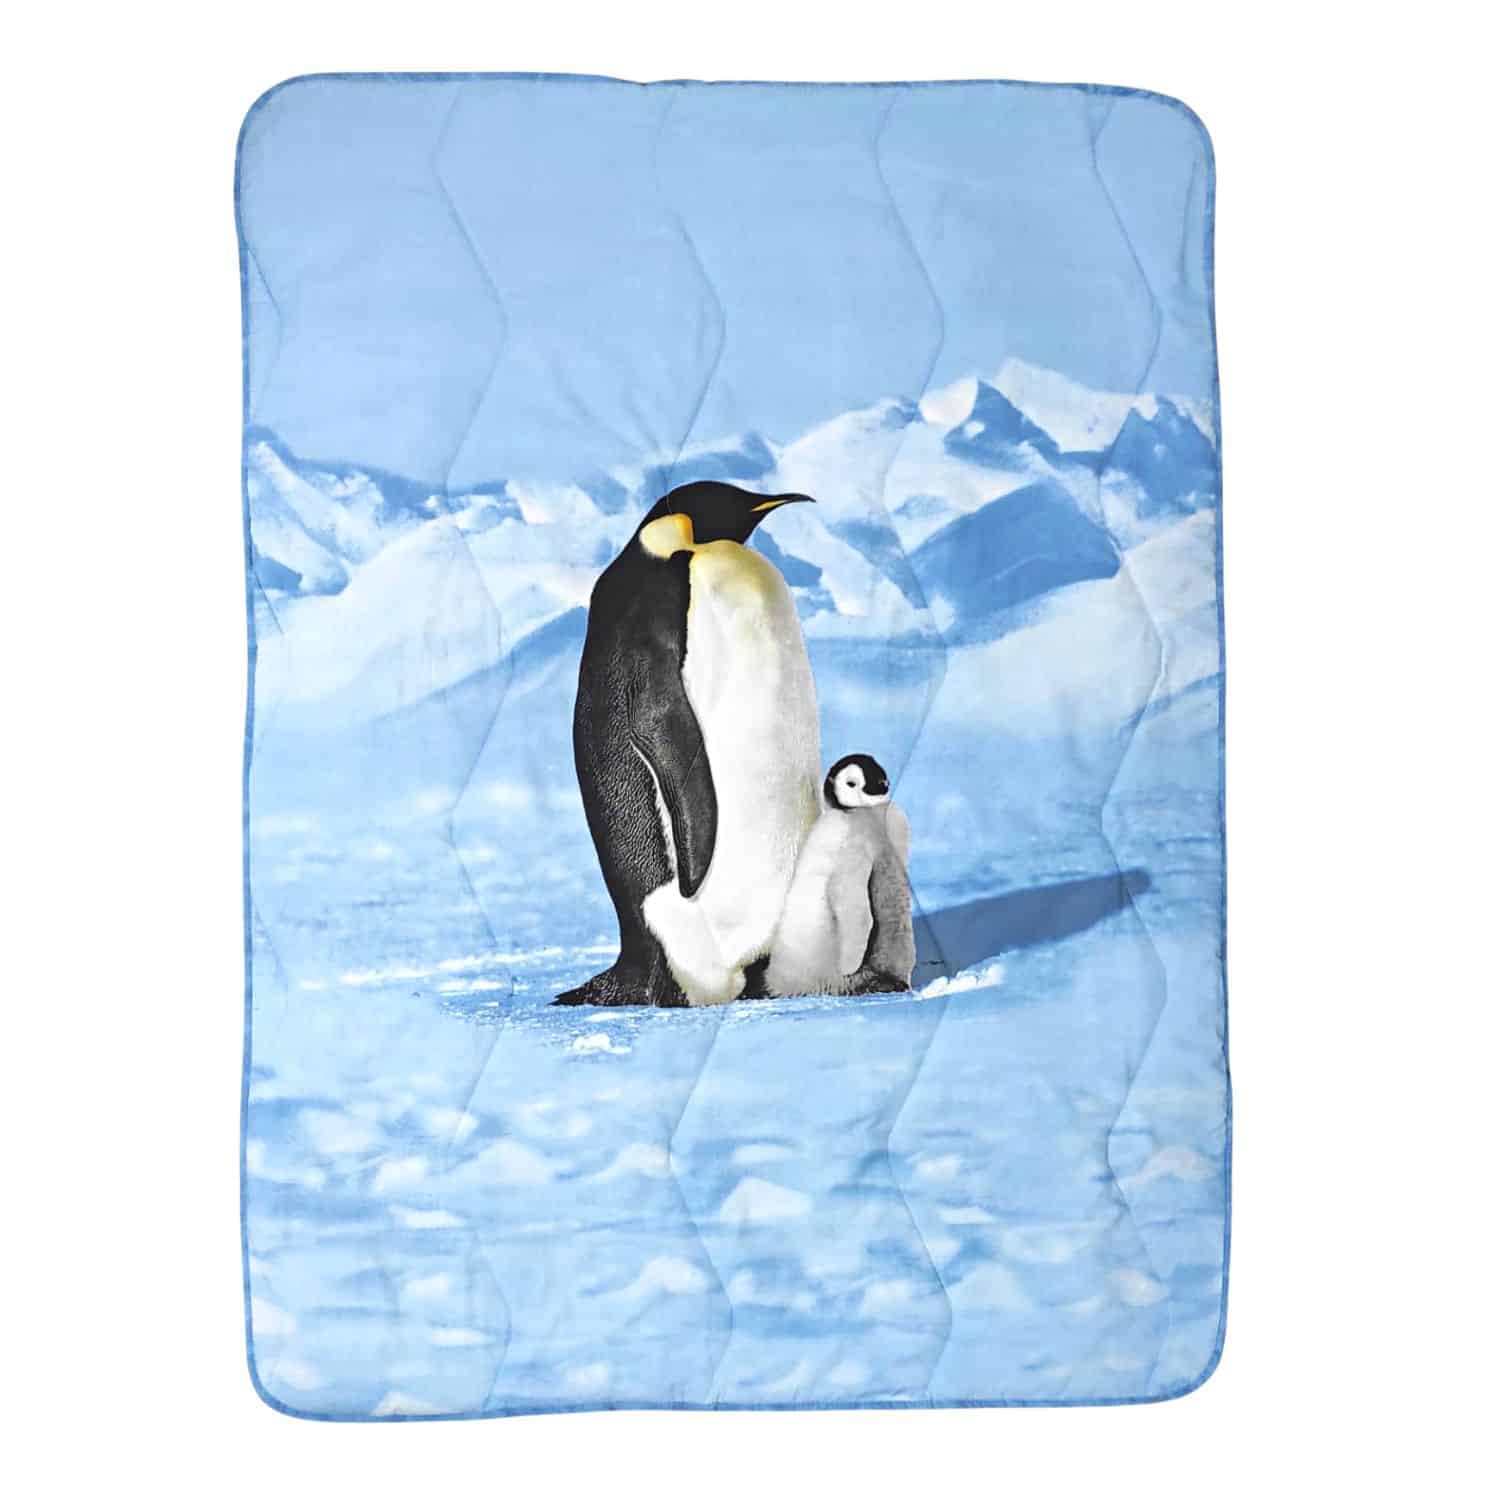 pinguini-plaid-imbottito-scaldotto-140x180-cotone-made-in-italy-invernale-coperta-neve-polo-nord-azzurro-bianco